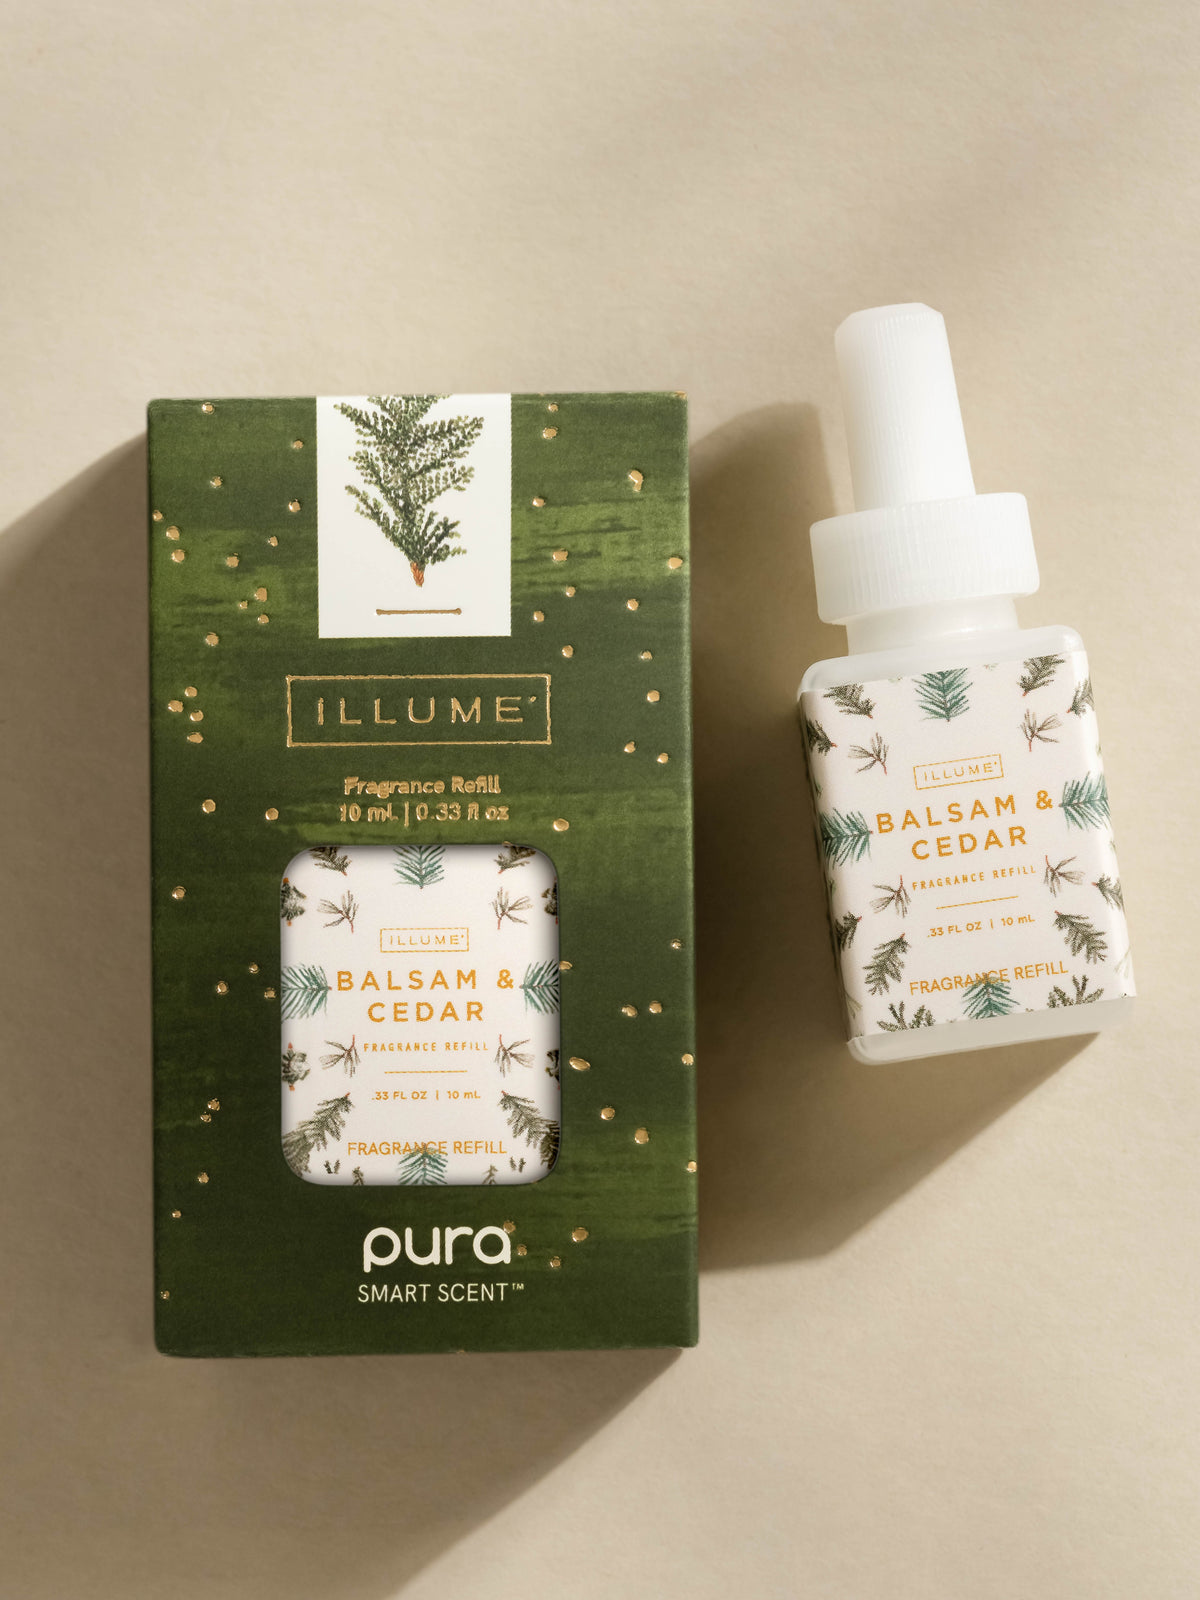 Balsam & Cedar Pura Smart Vial Fragrance Refill by Illume